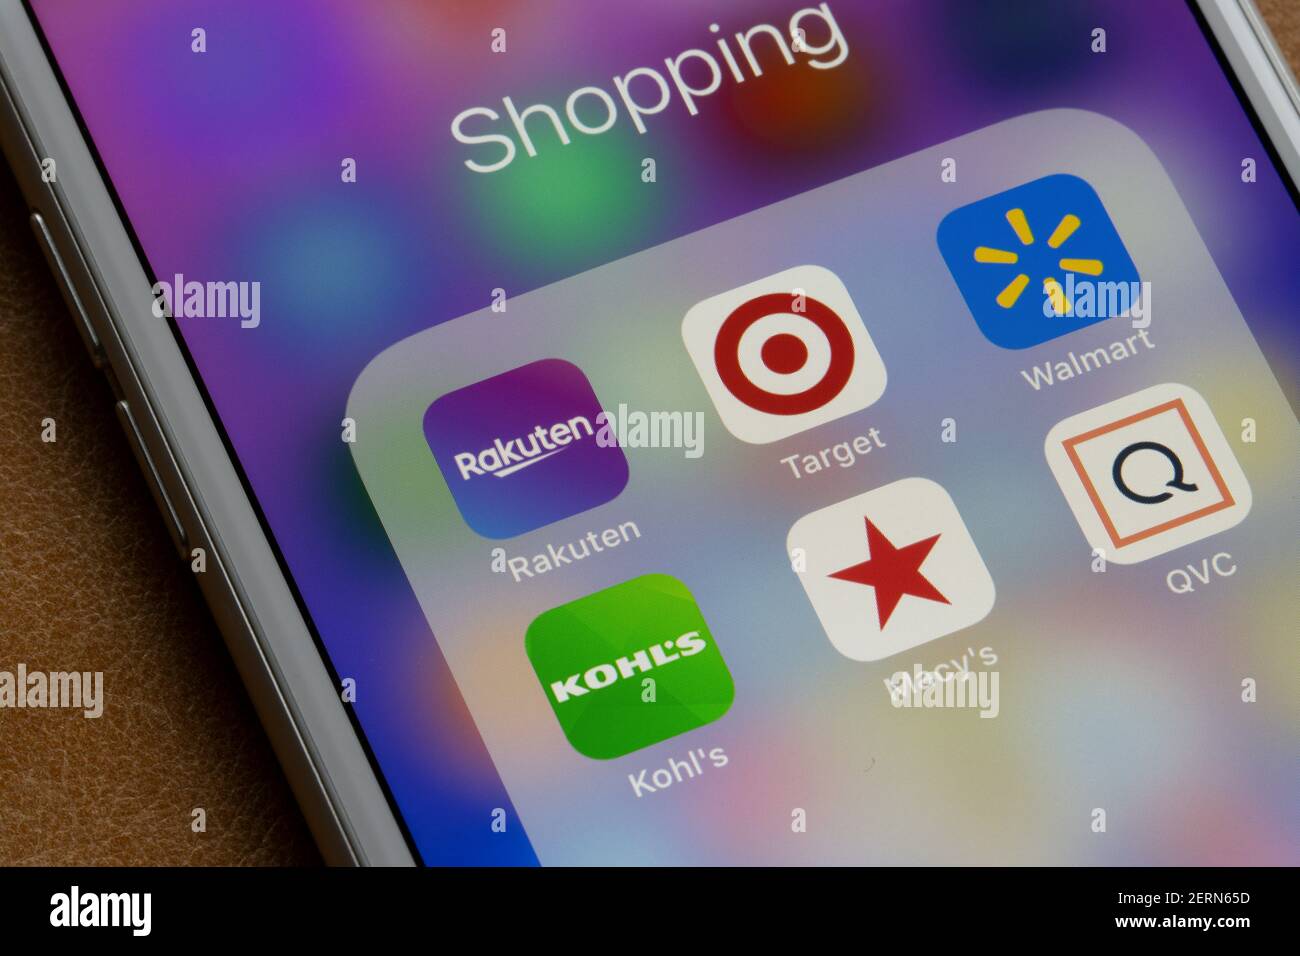 L'app mobile Rakuten è presente tra le altre app per lo shopping su un iPhone. Rakuten lavora in negozi come Target, Walmart, Kohl's, Macy's, OVC, e simili. Foto Stock